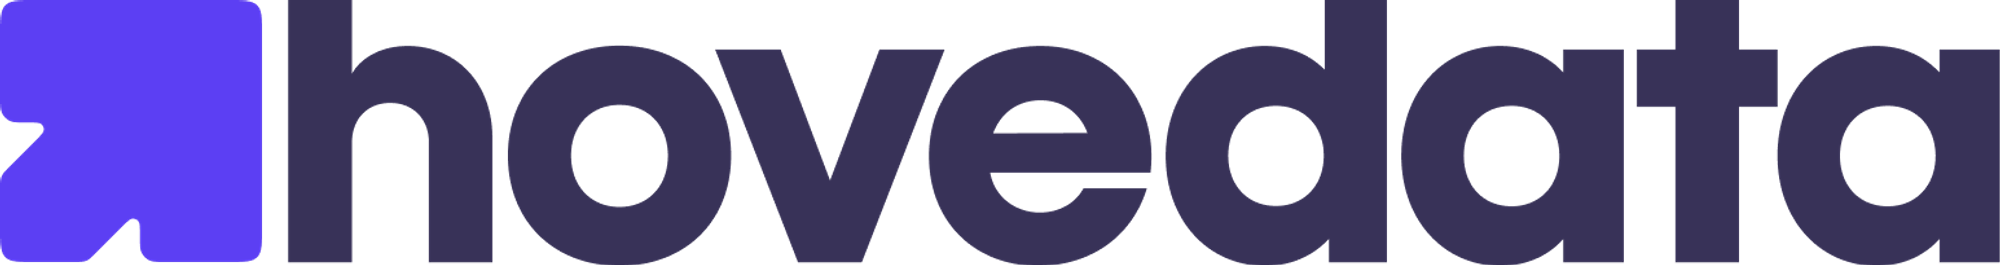 Modern logo design for hovedata.com